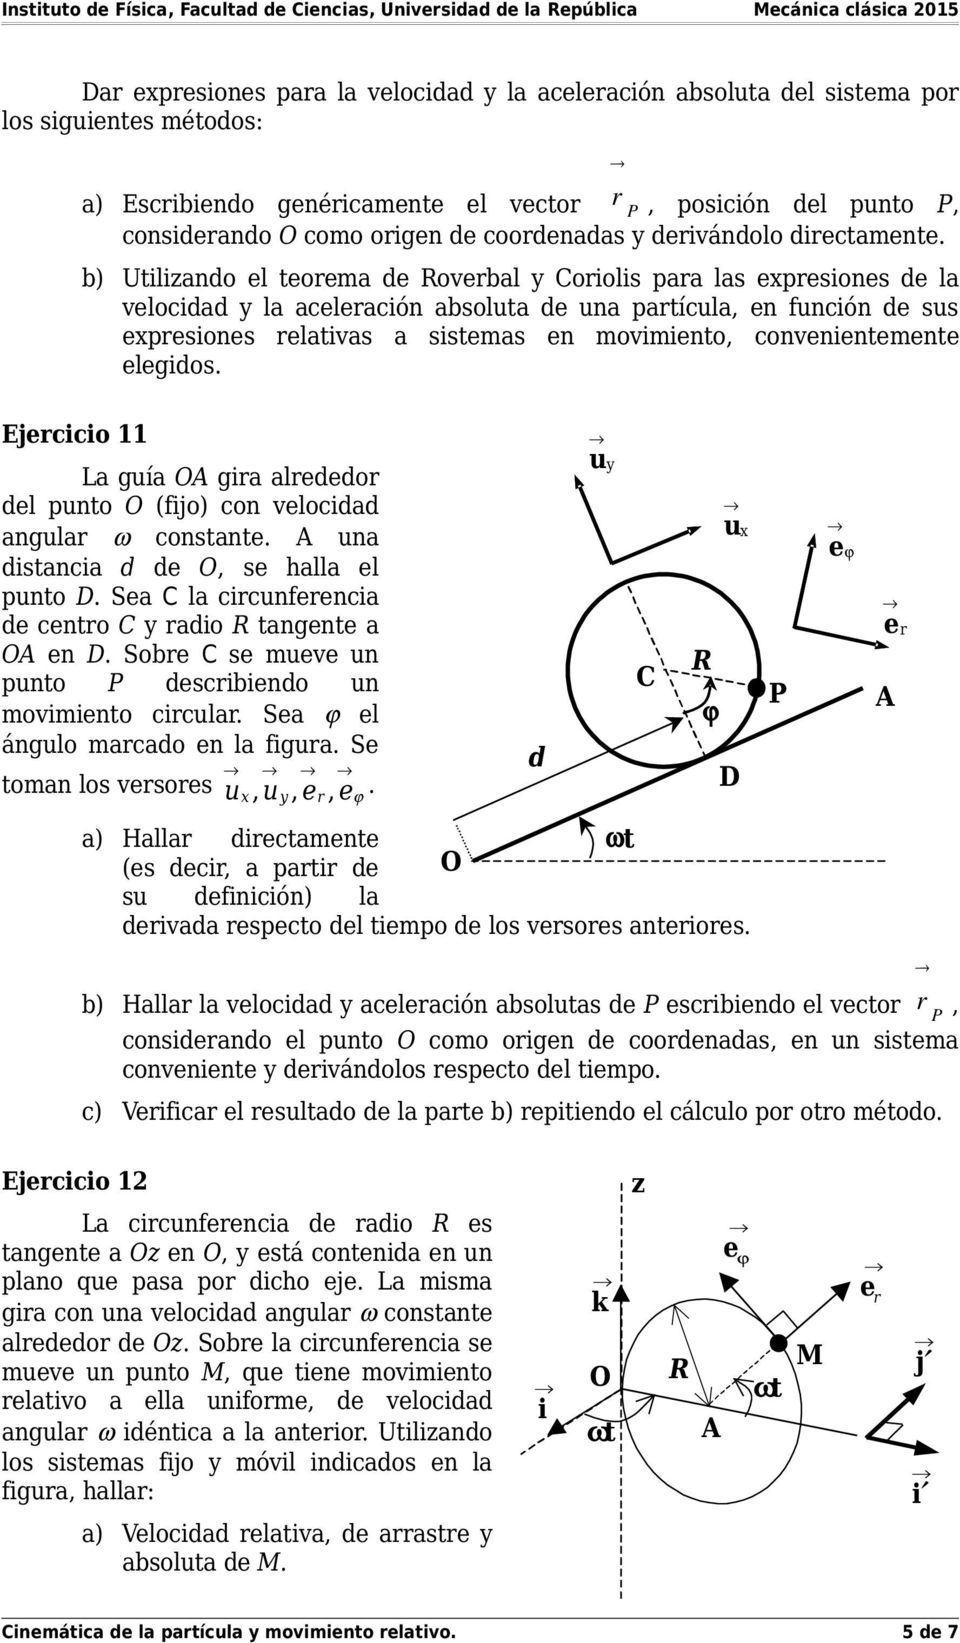 b) Utilizando el teorema de Roverbal y Coriolis para las expresiones de la velocidad y la aceleración absoluta de una partícula, en función de sus expresiones relativas a sistemas en movimiento,